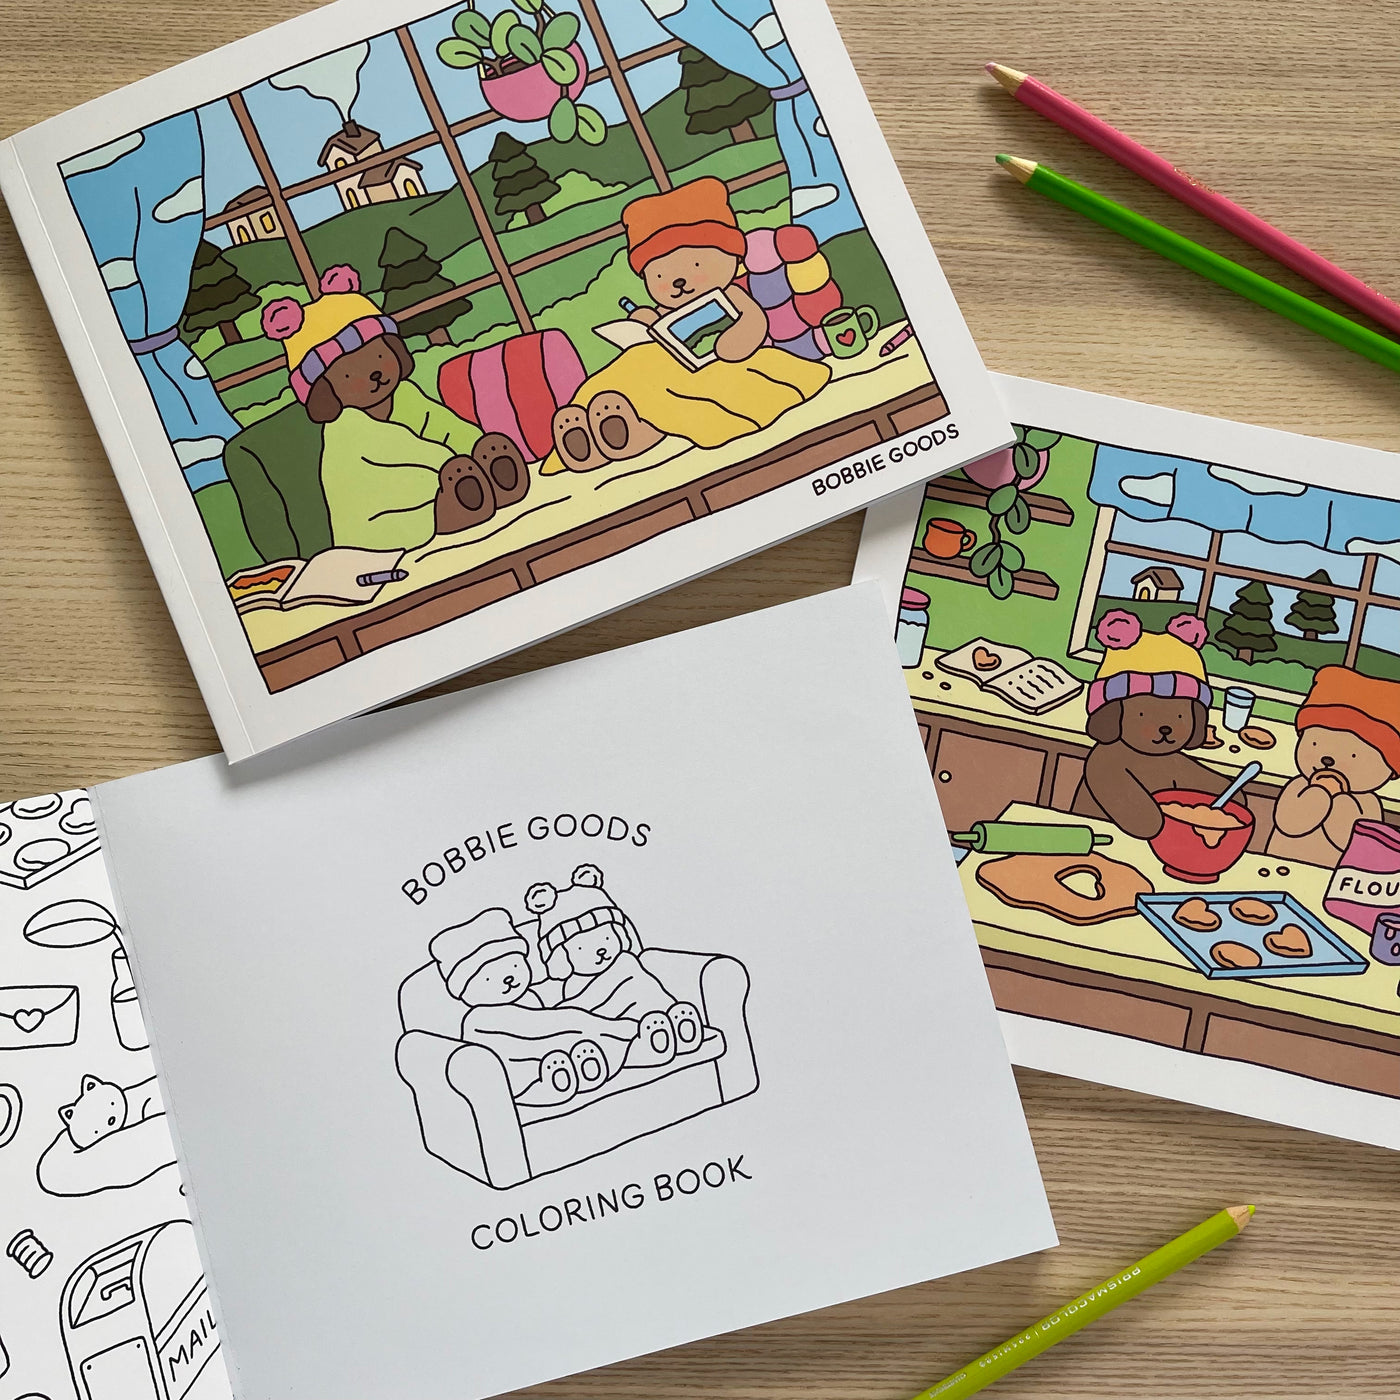 Bobbie Goods: Kids Coloring Book with Bobbie Goods, Bear, Bobby